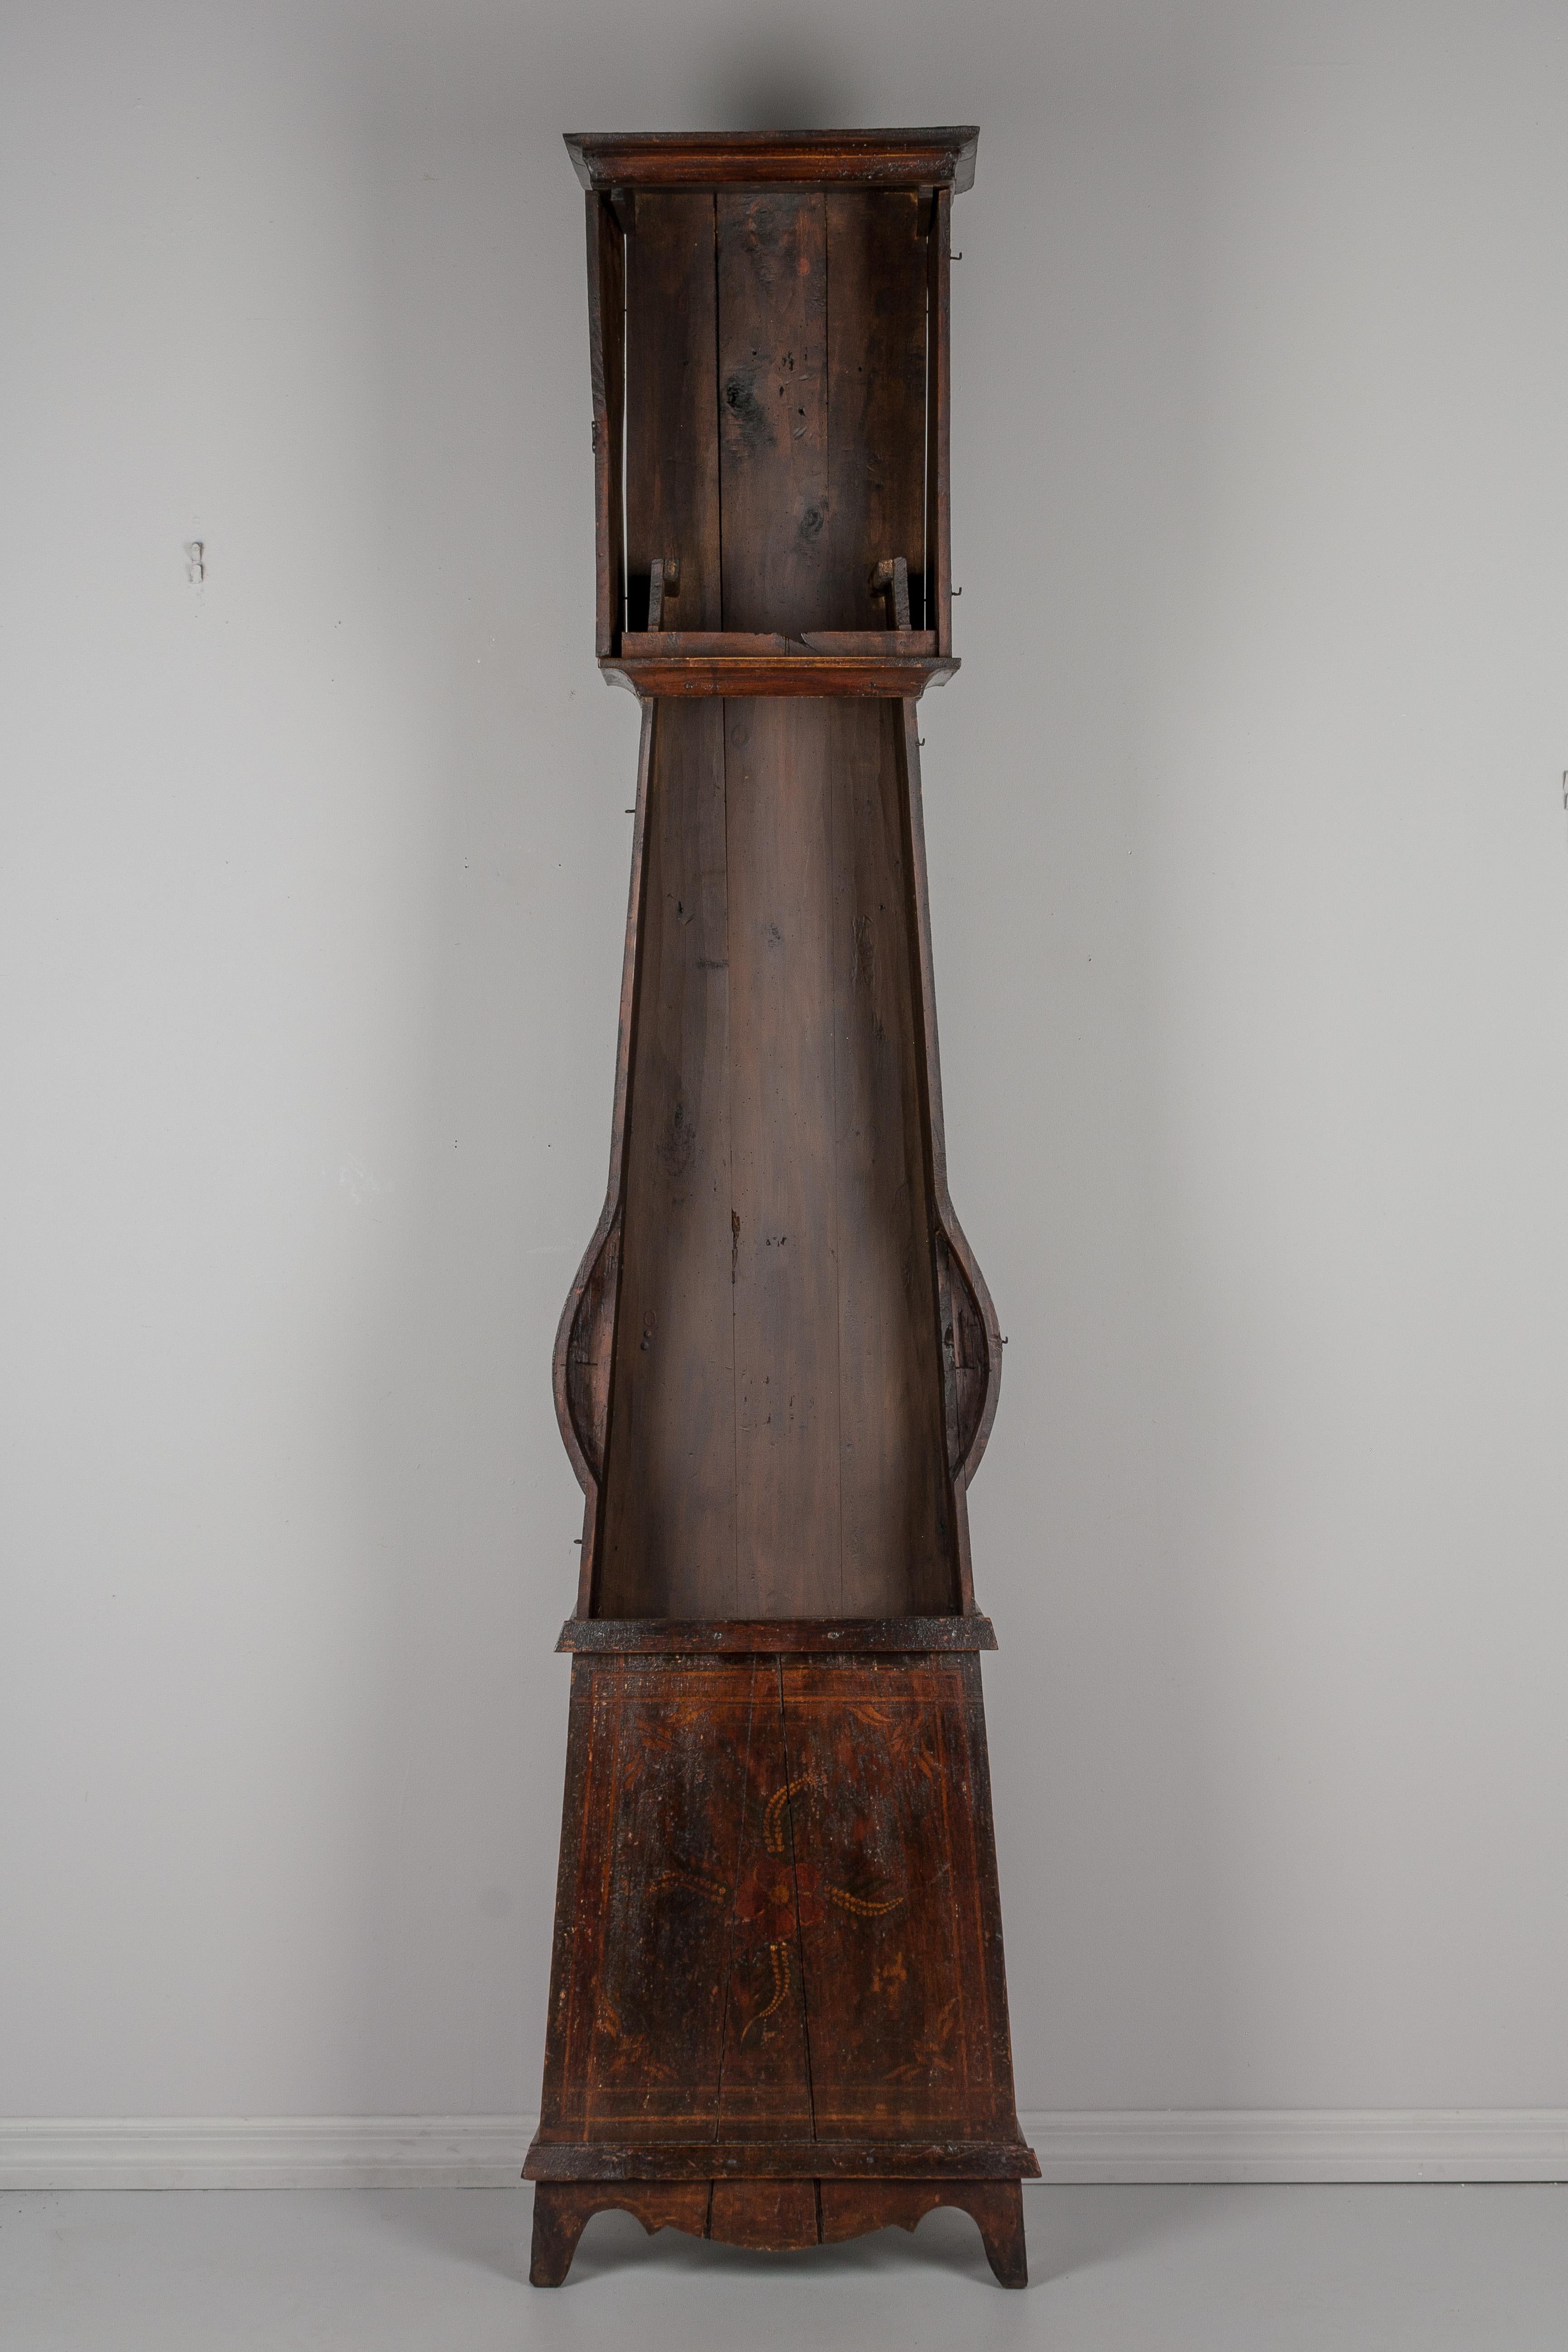 Une comtoise ou horloge de grand-père française du XIXe siècle, avec un boîtier en pin peint en polychrome et un pendule en laiton gaufré. Mouvement Morbier d'origine à sept jours, nettoyé professionnellement et en état de marche, avec un cadran en